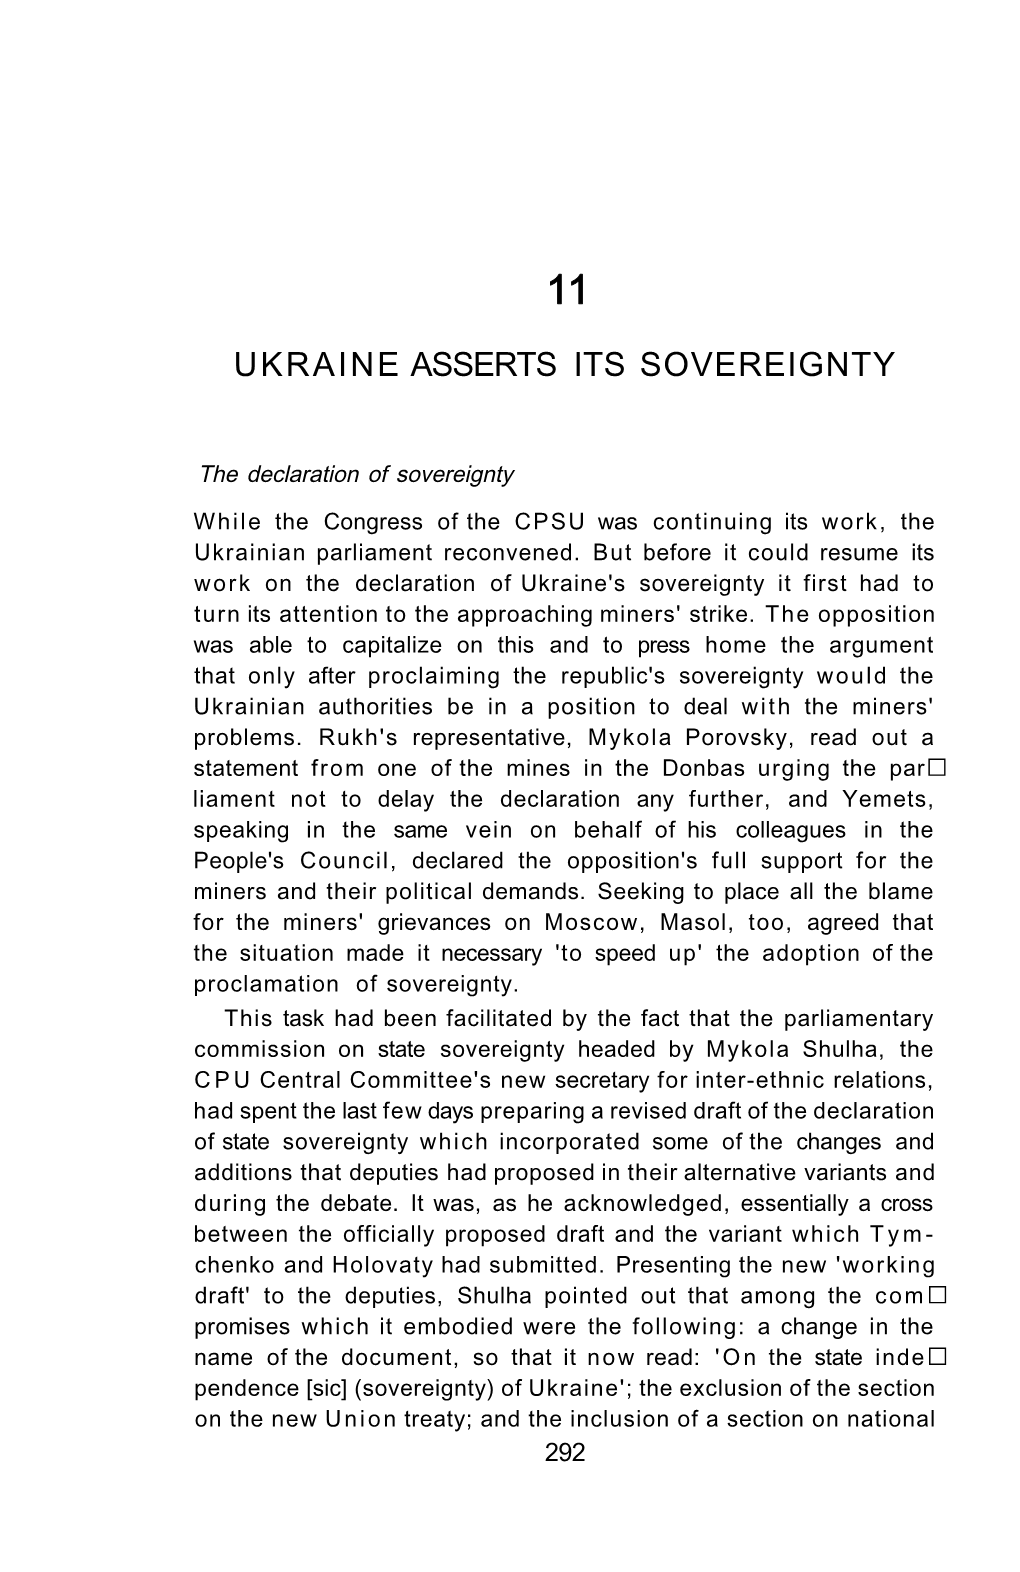 Ukraine Asserts Its Sovereignty